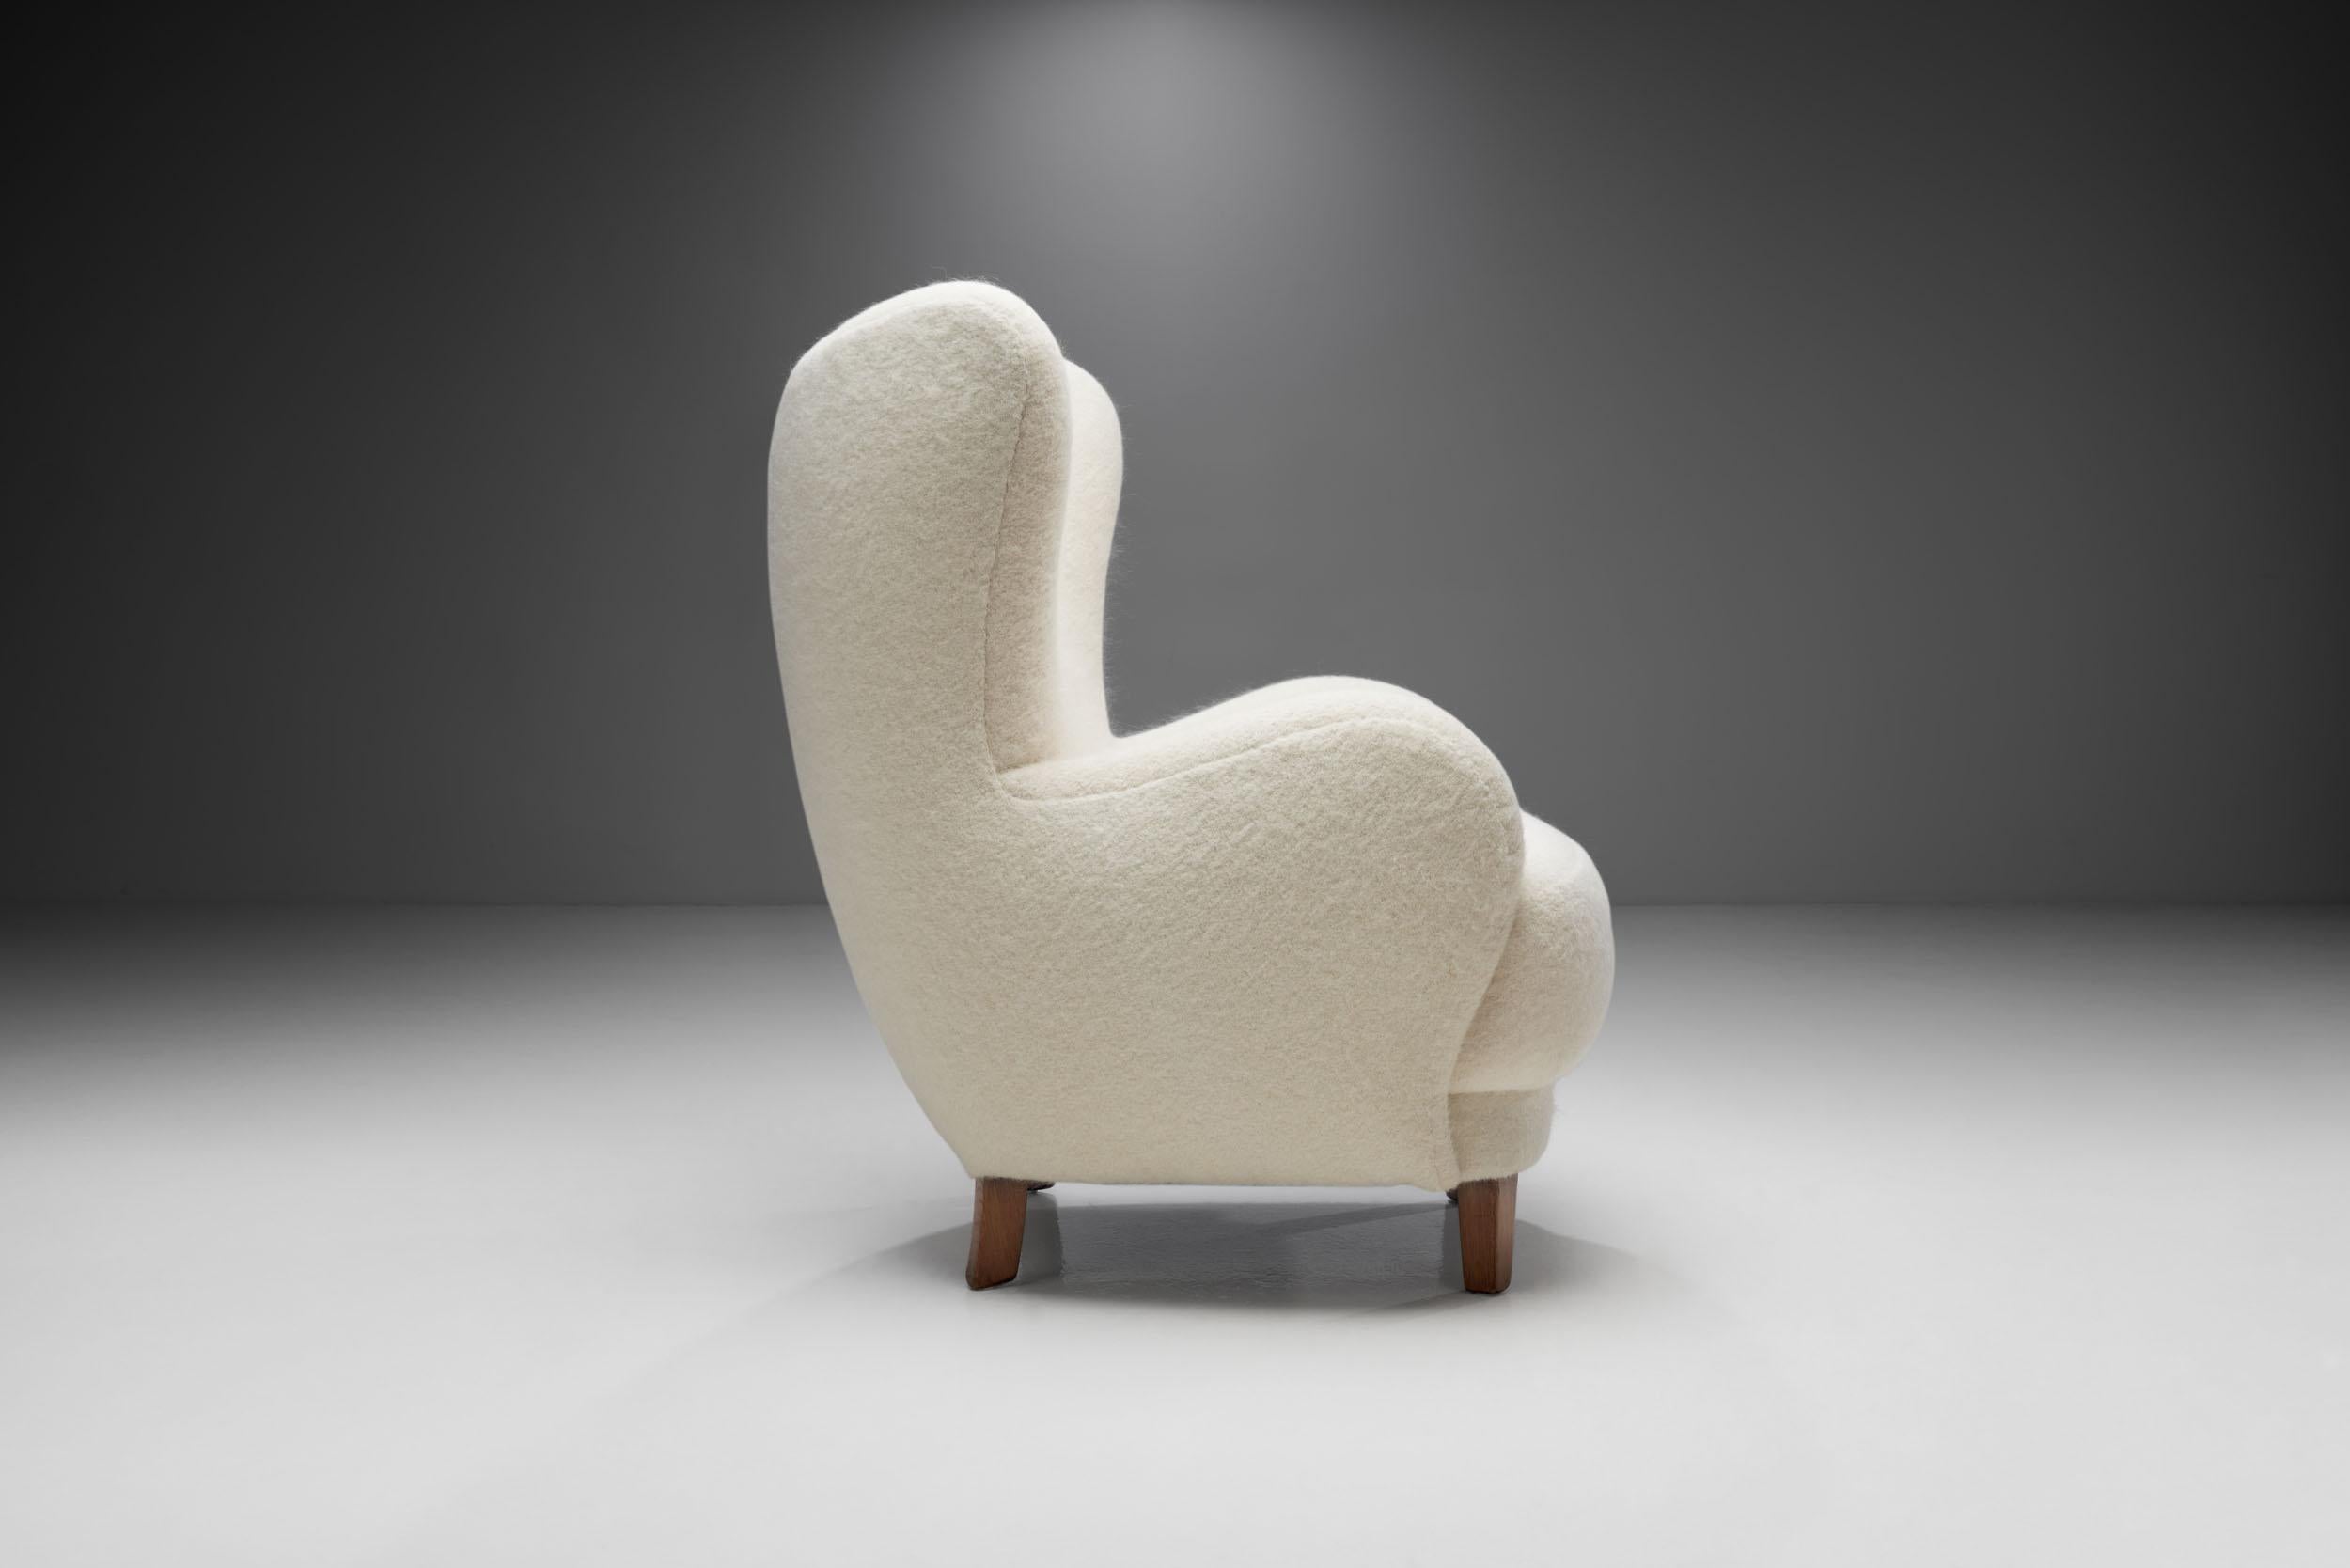 Scandinavian Modern Lounge Chair with Beech Legs by Danish Cabinetmaker, Denmark, 1940s